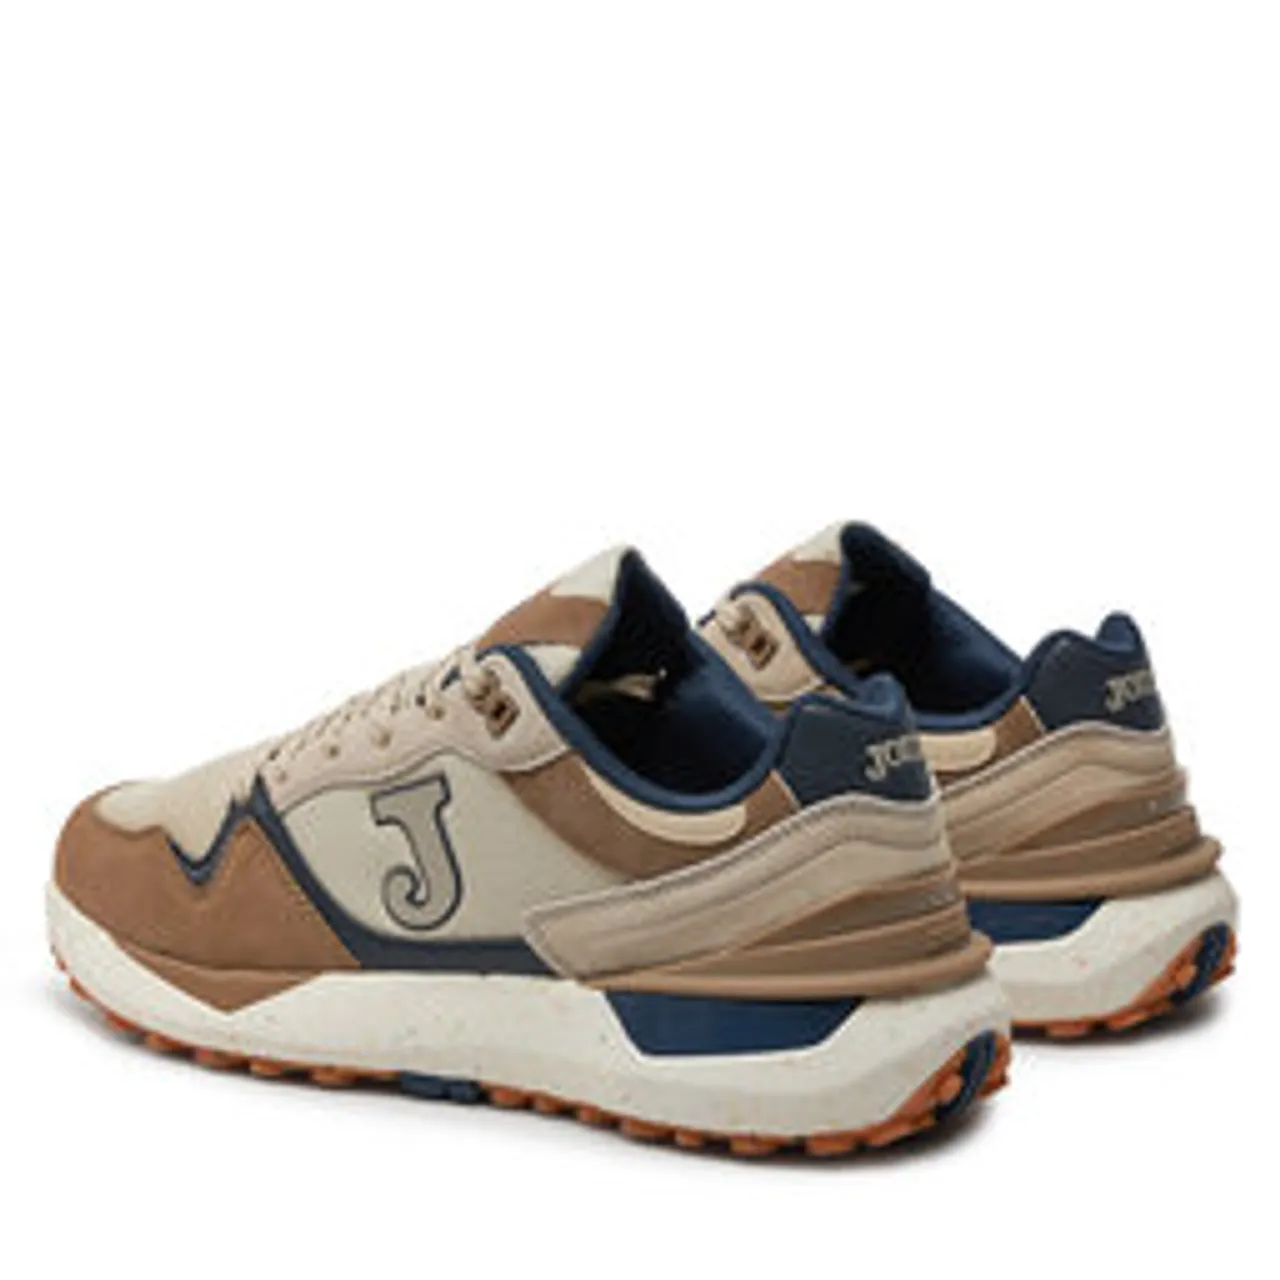 Sneakers Joma C.3080 Men 2425 C3080S2425 Brown Beige Navy Blue